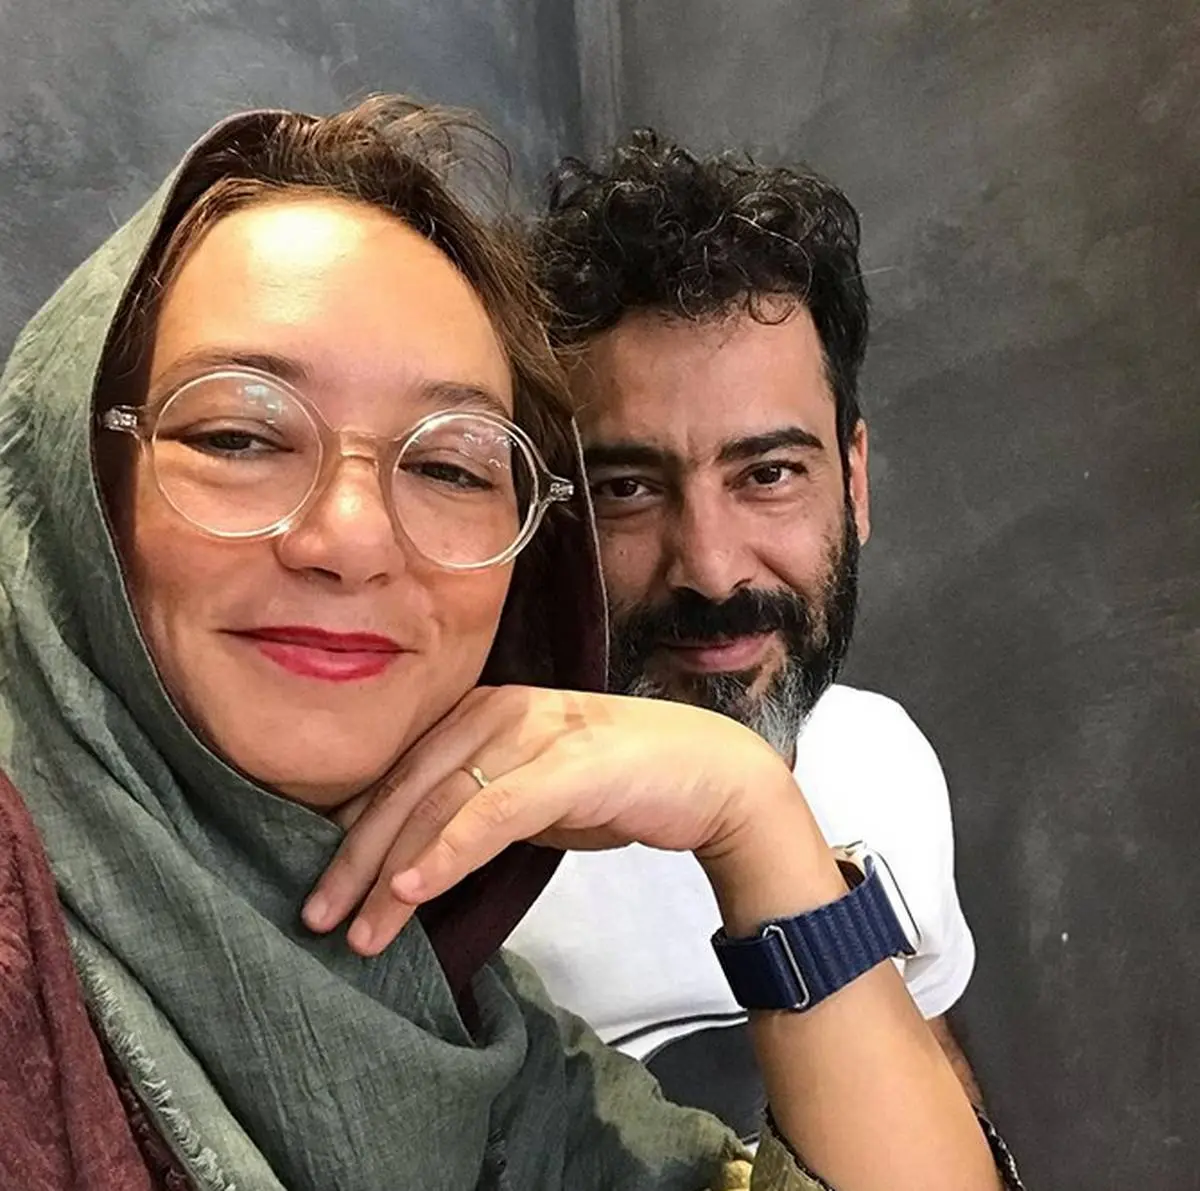 سحر ولدبیگی و ماجرای ازدواجش + بیوگرافی و تصاویر جدید